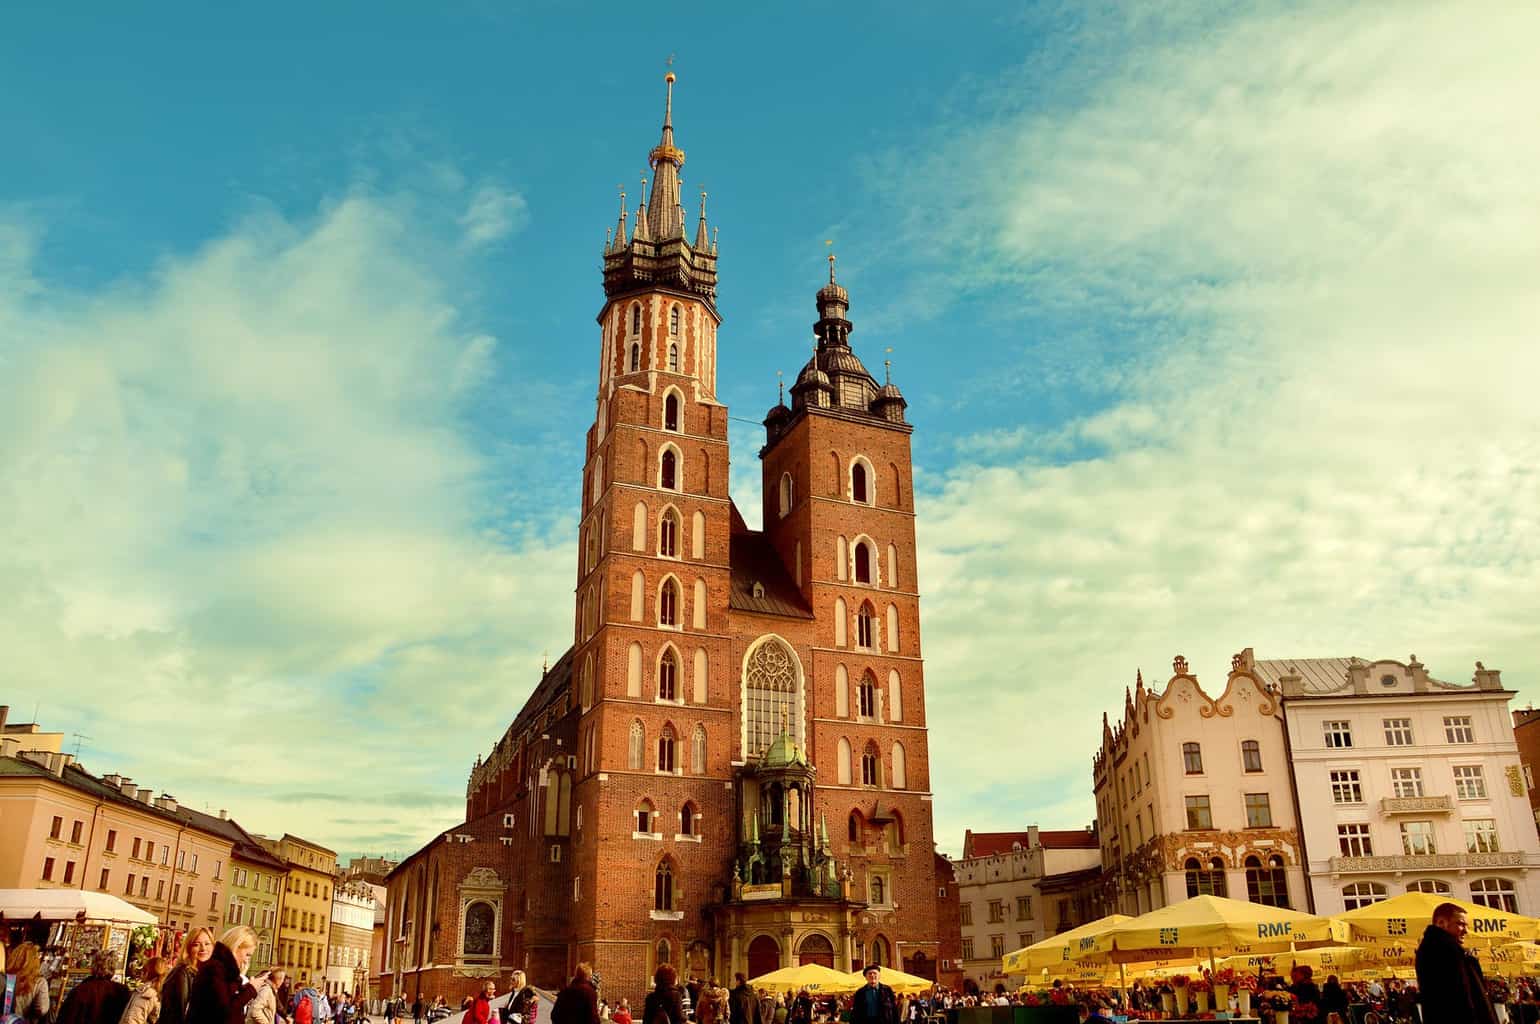 Krakow: Europe's fairytale city